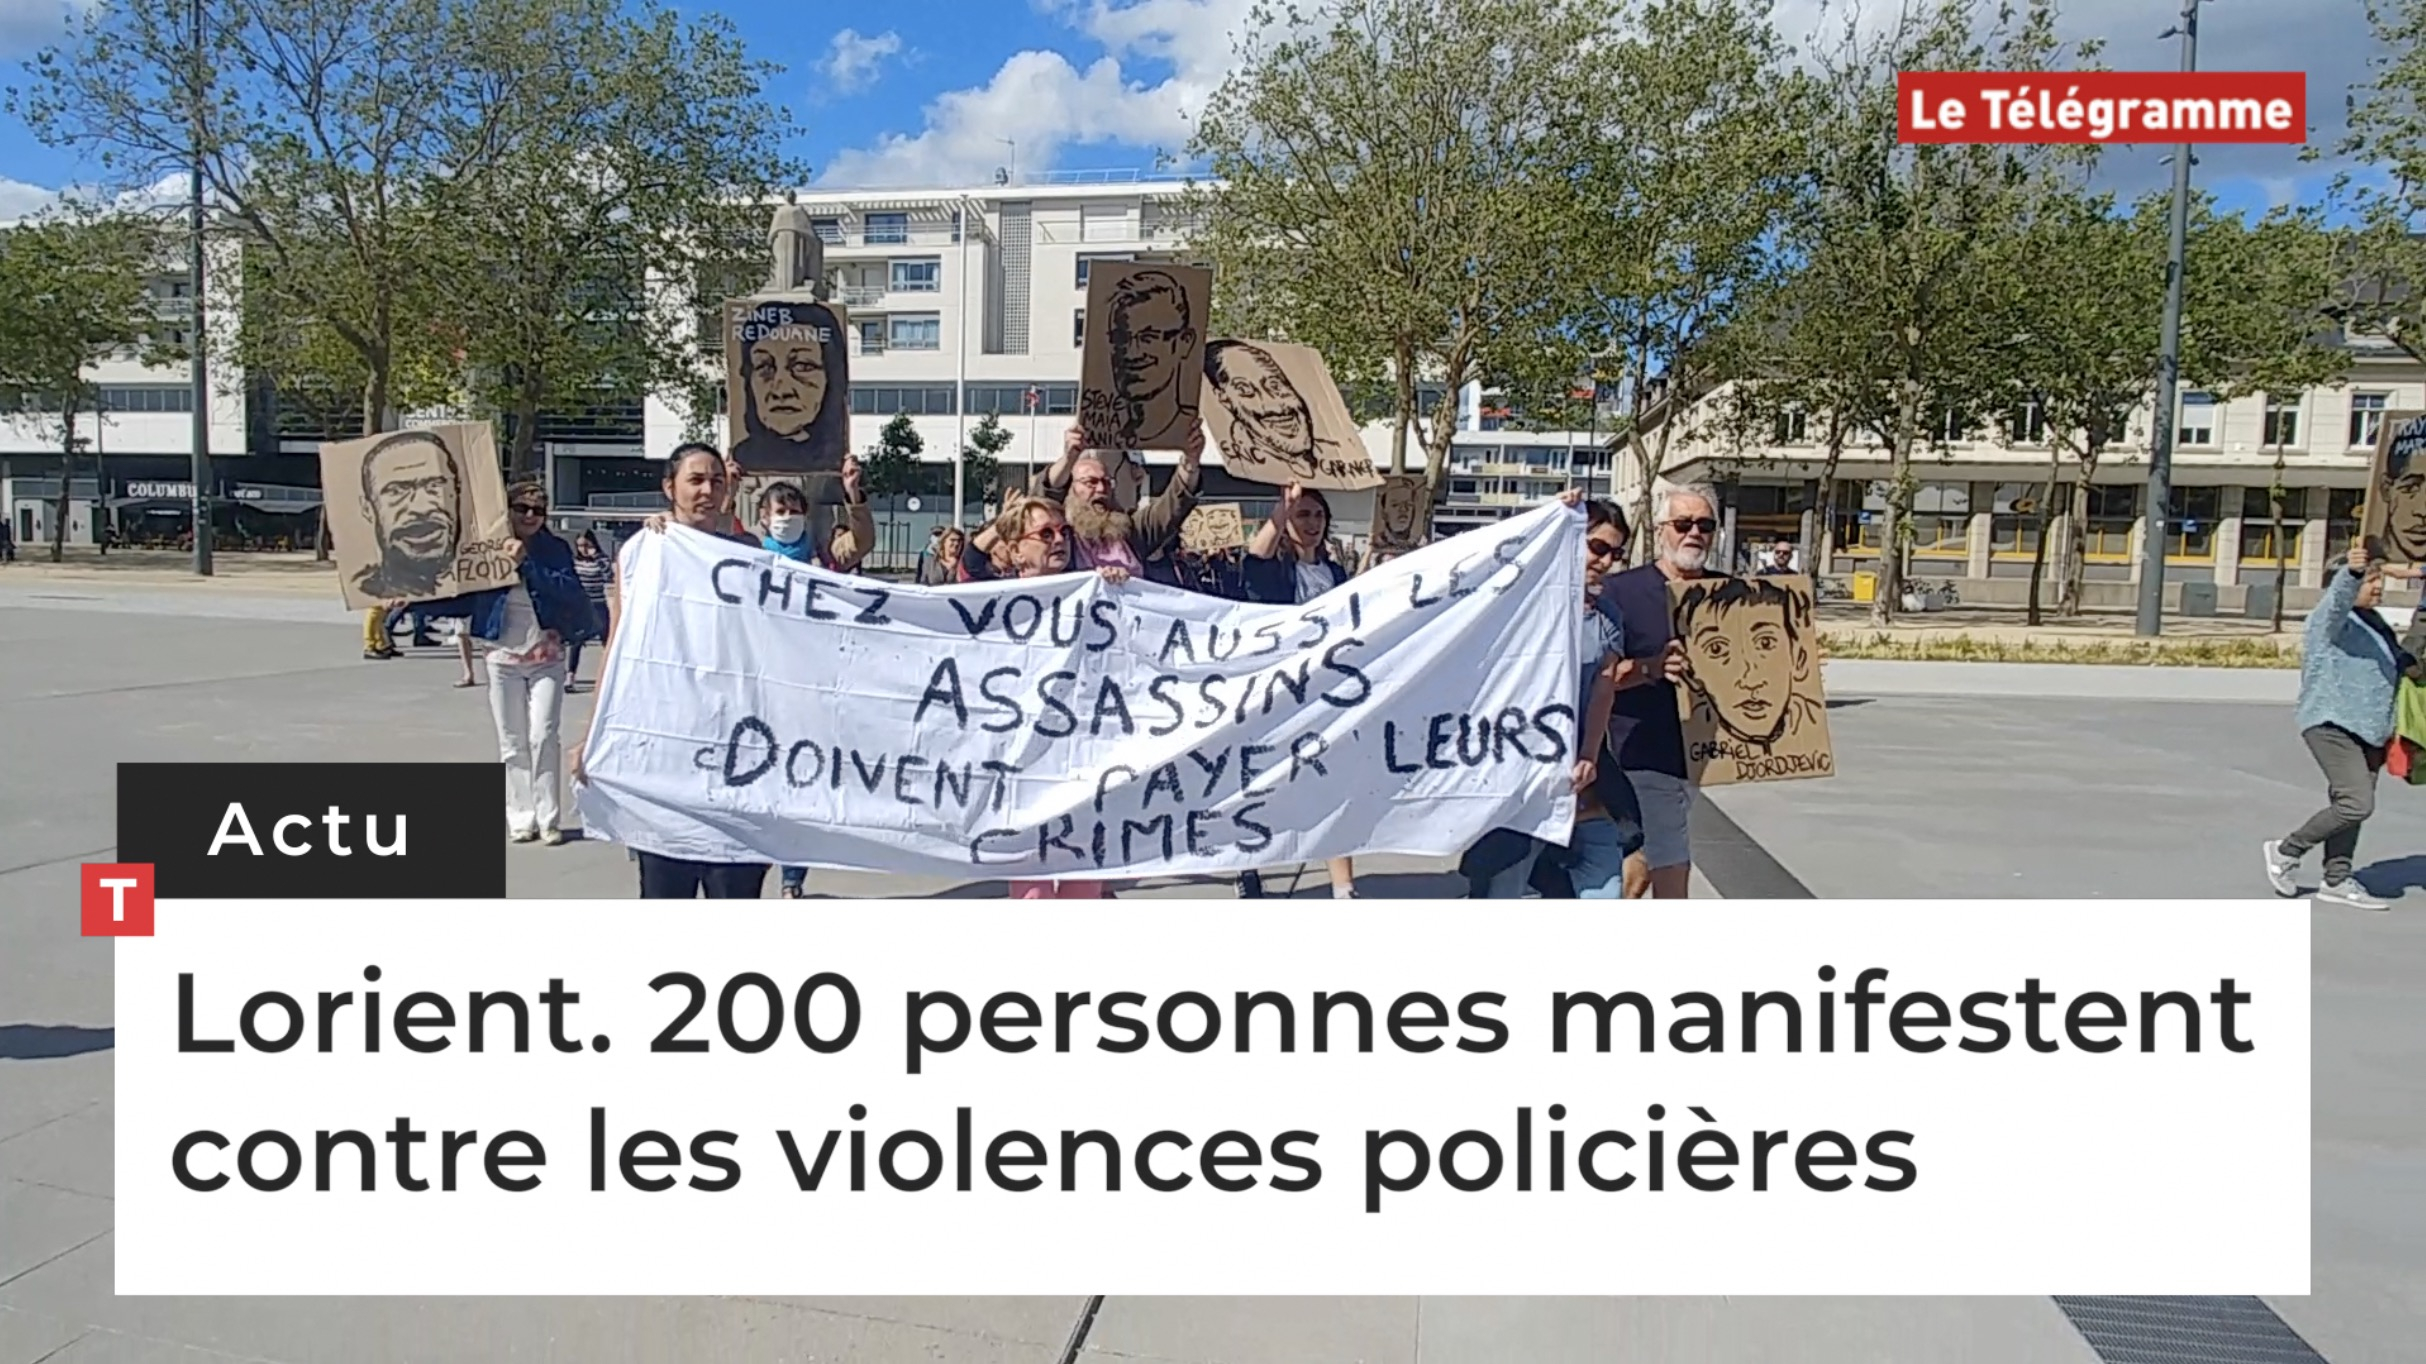 Lorient. 200 personnes manifestent contre les violences policières (Le Télégramme)